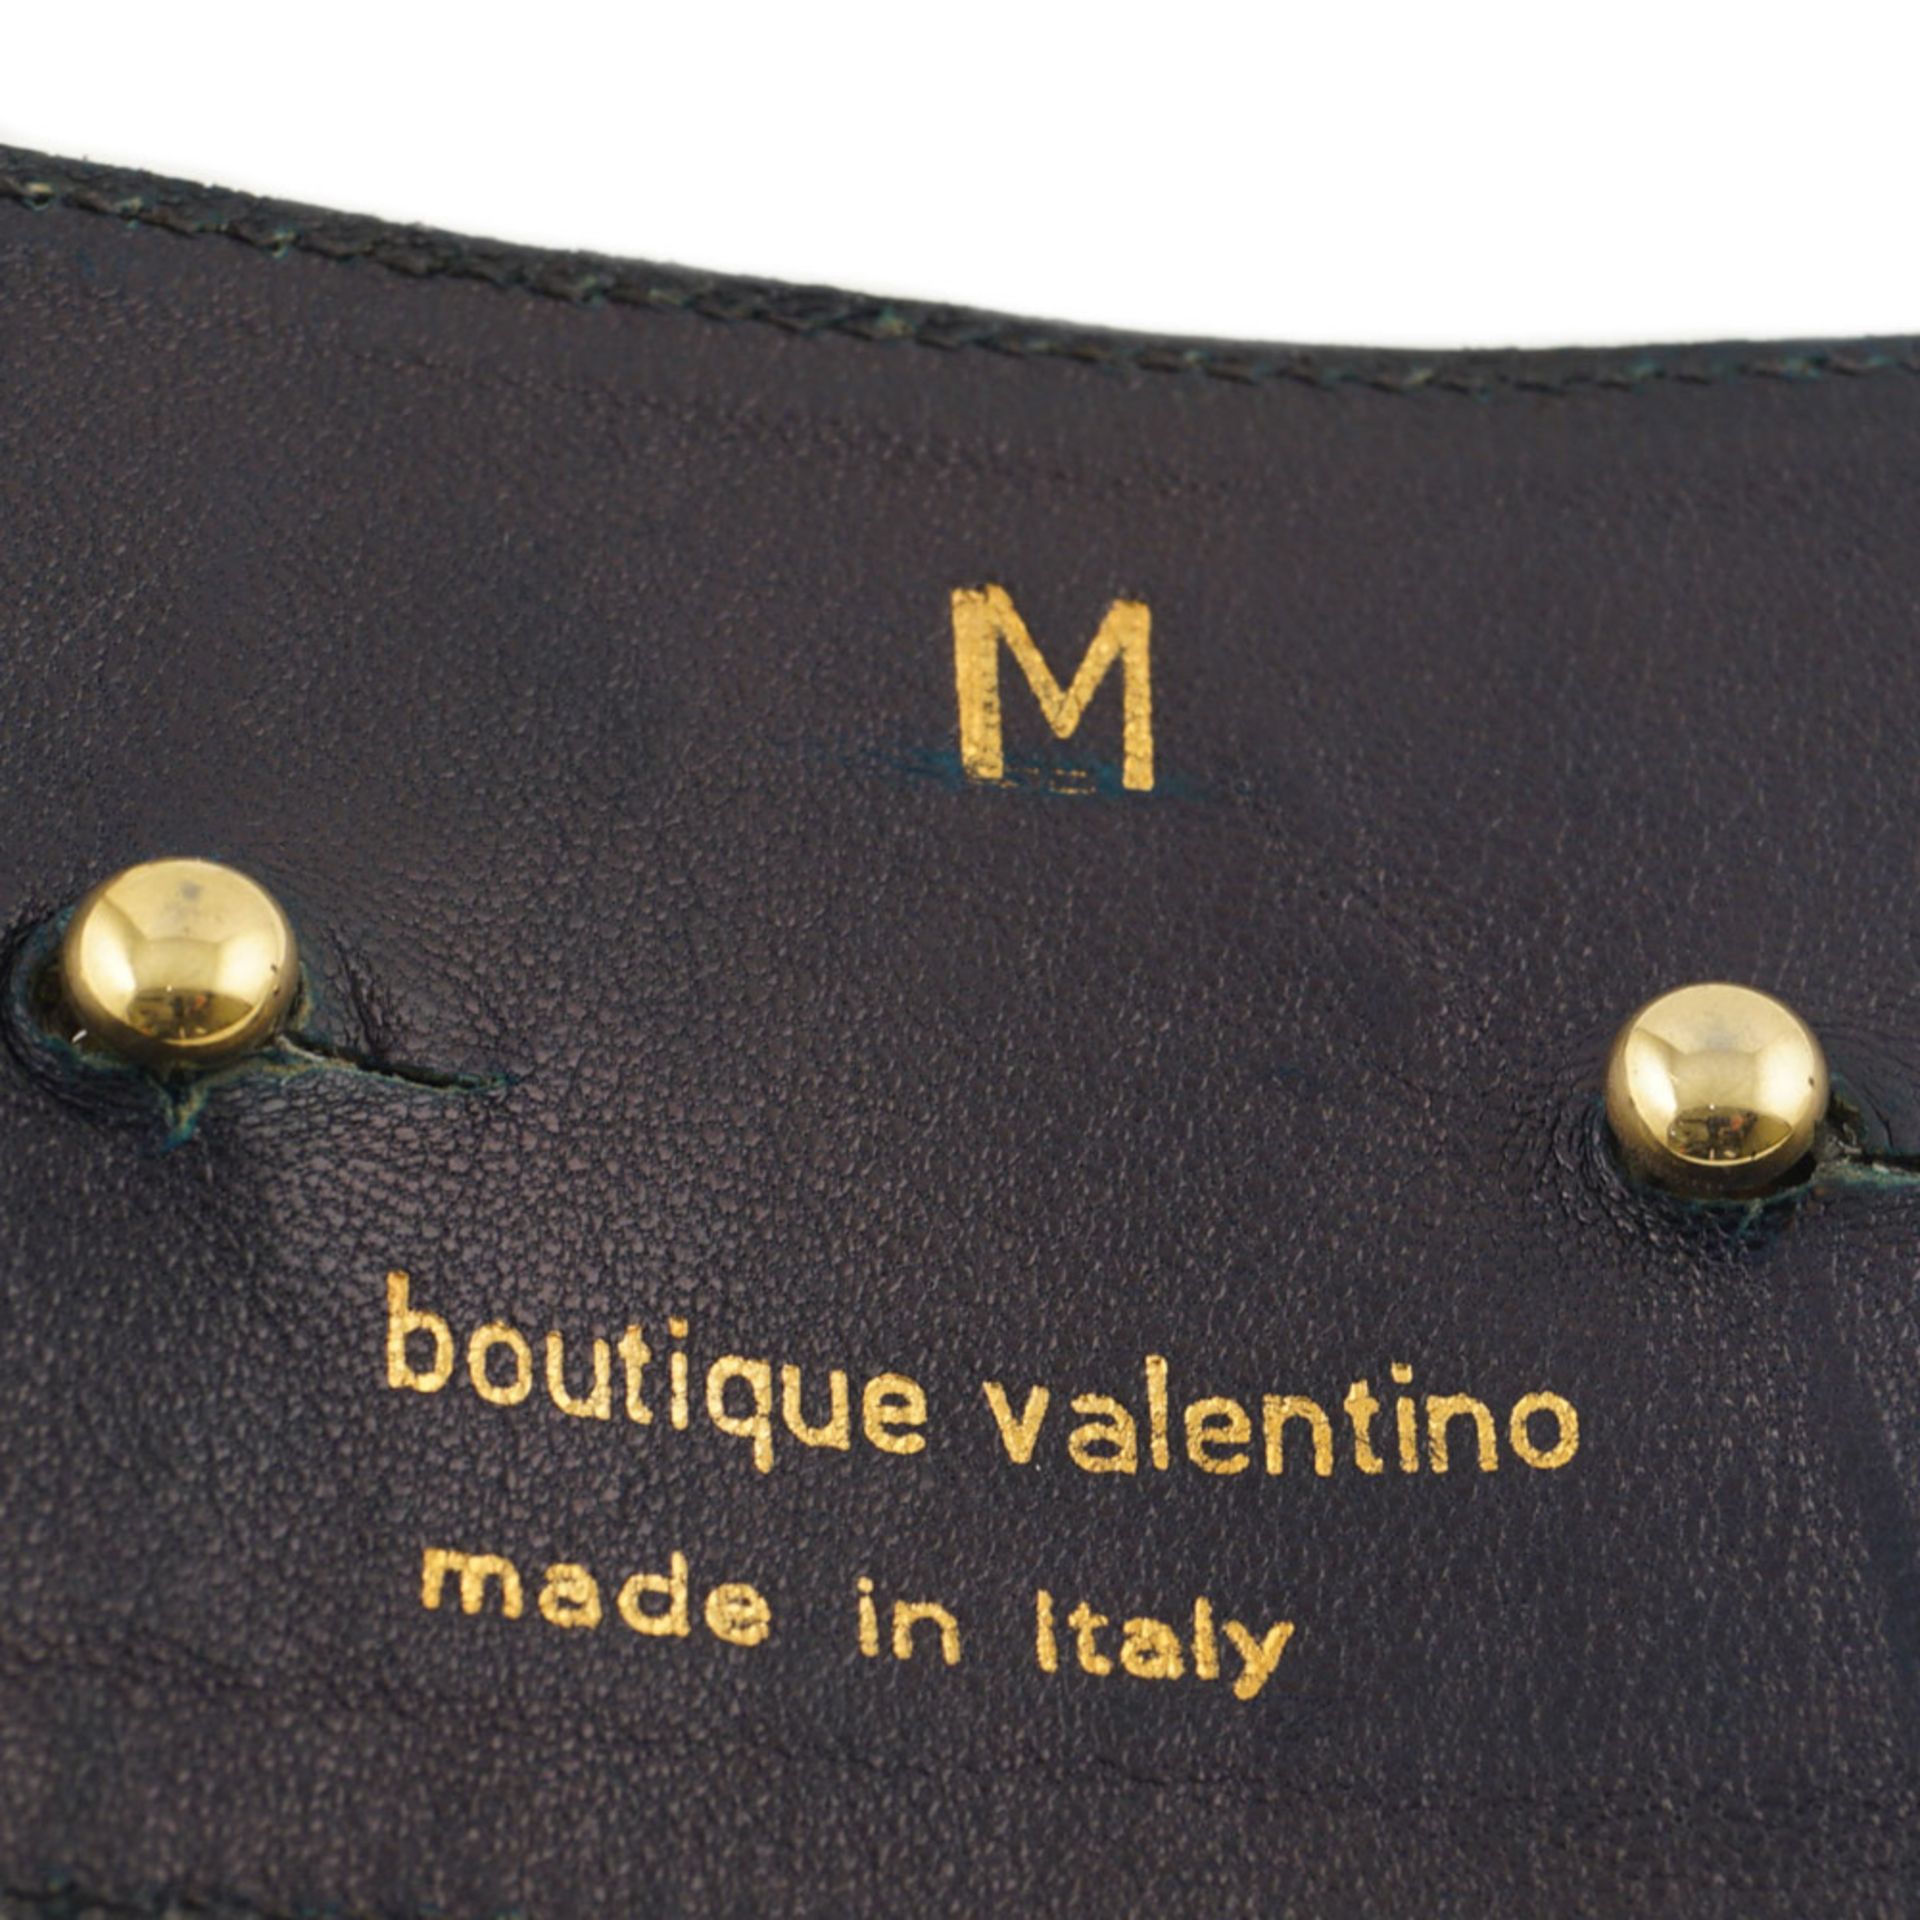 Valentino, vintage bustier belt length 80 cm - Image 2 of 2